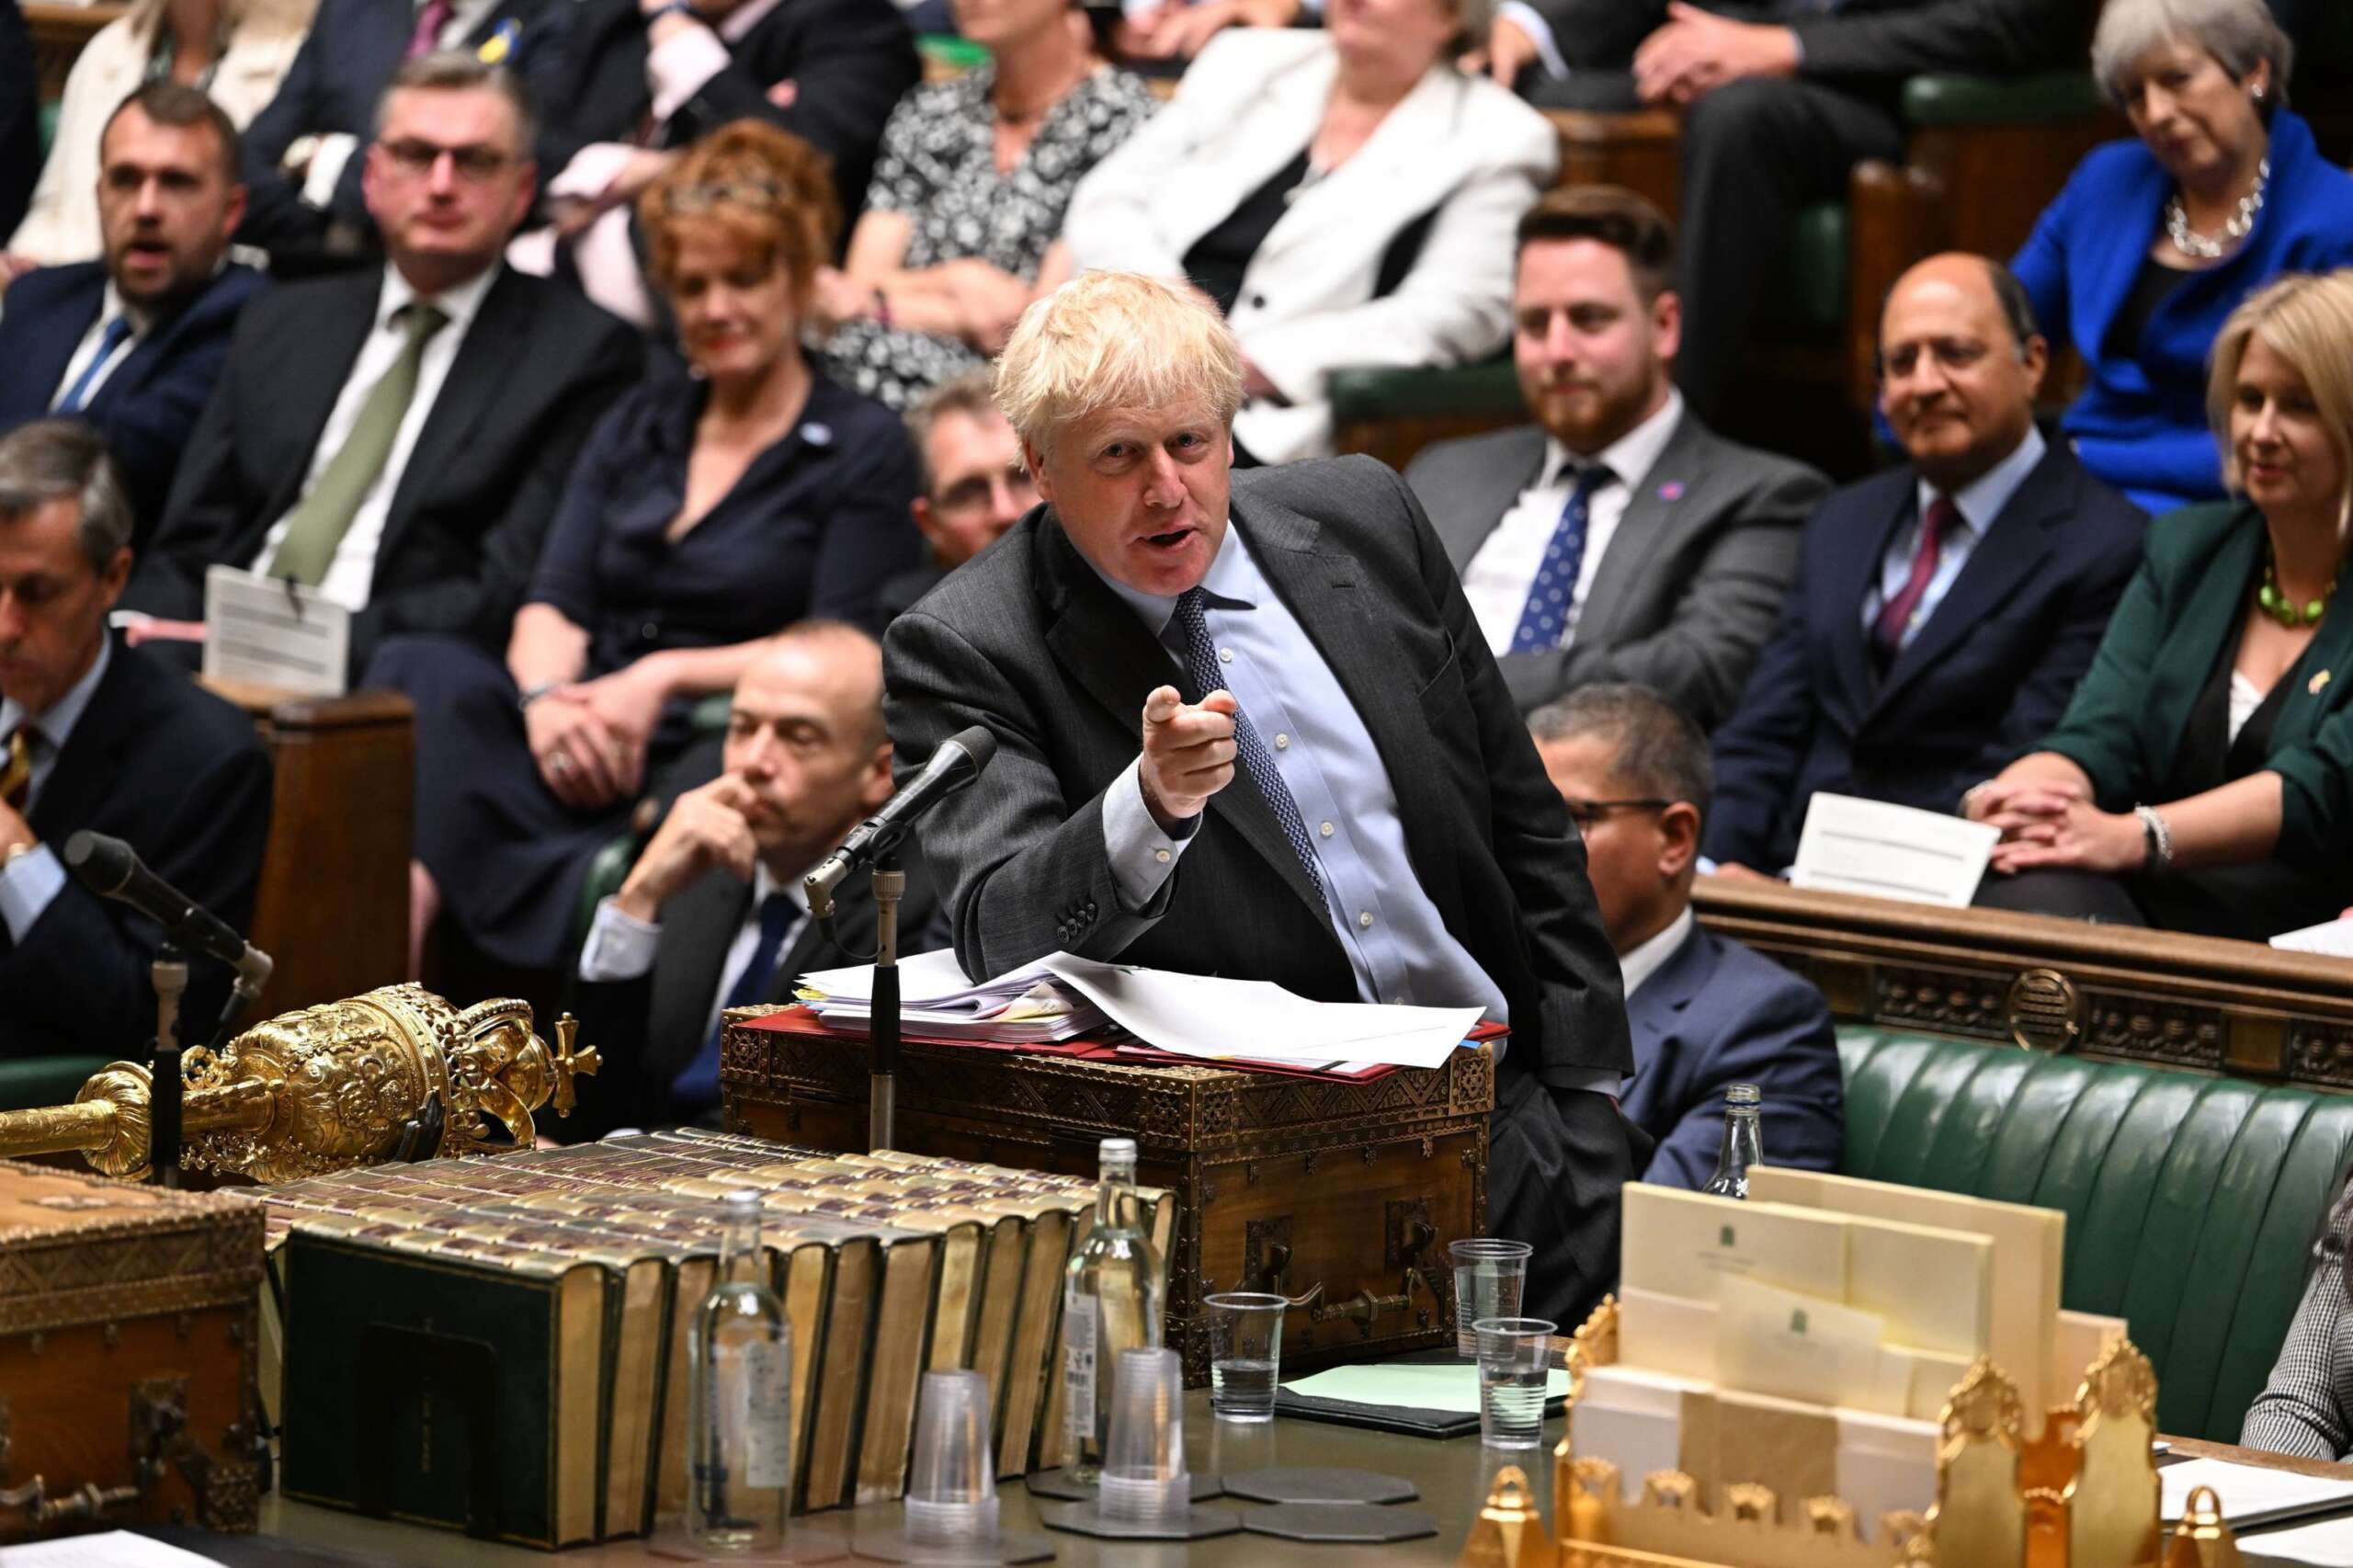 Ethics adviser to scandal-hit UK leader Boris Johnson resigns